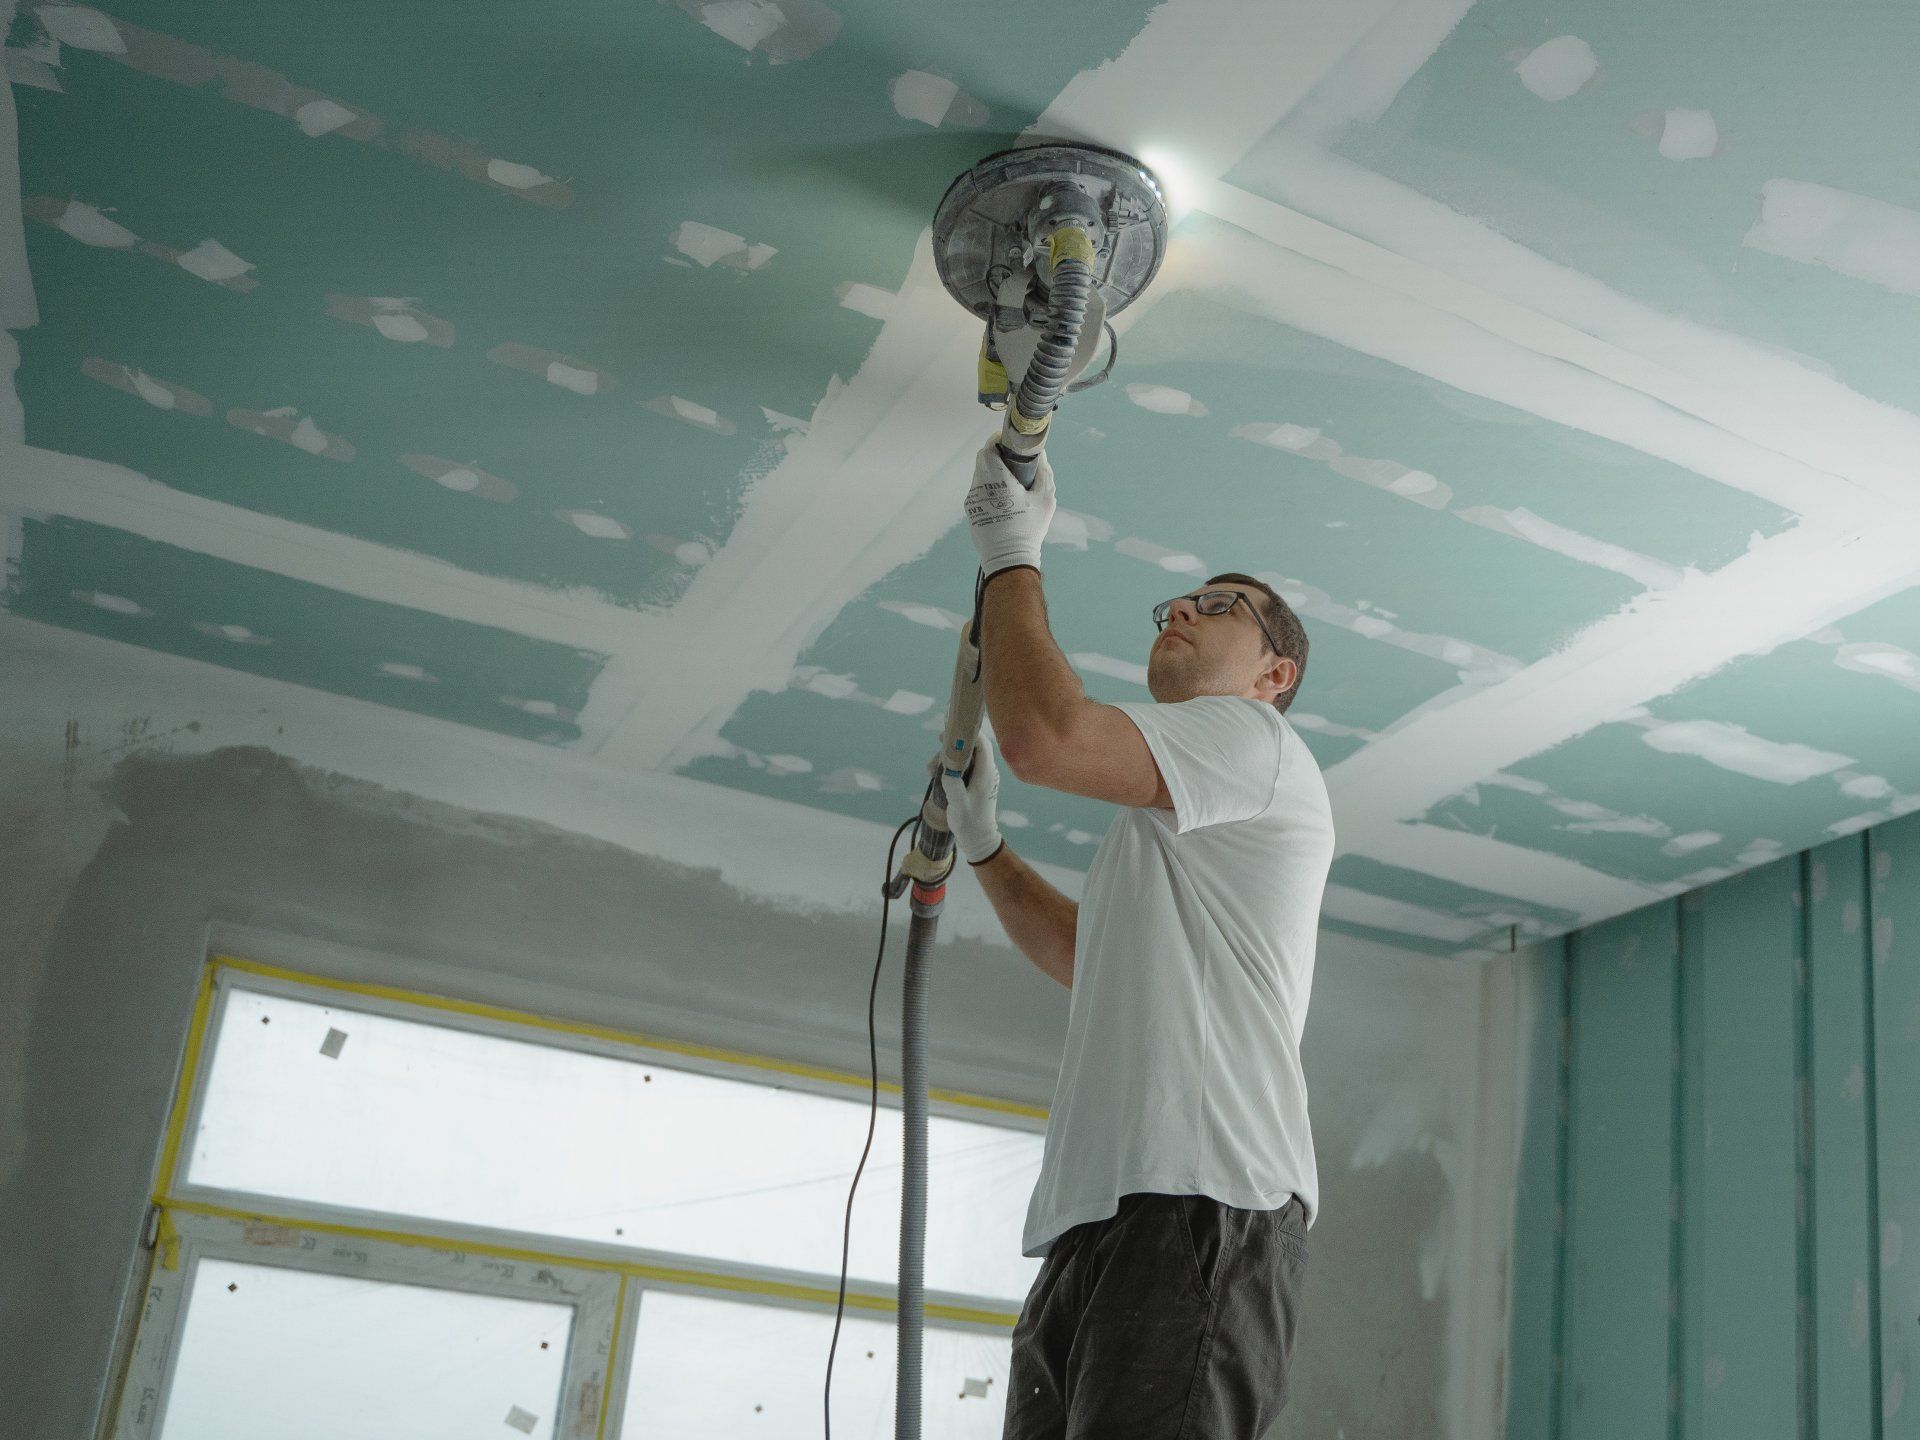 drywall worker sanding a greenboard sheetrock ceiling